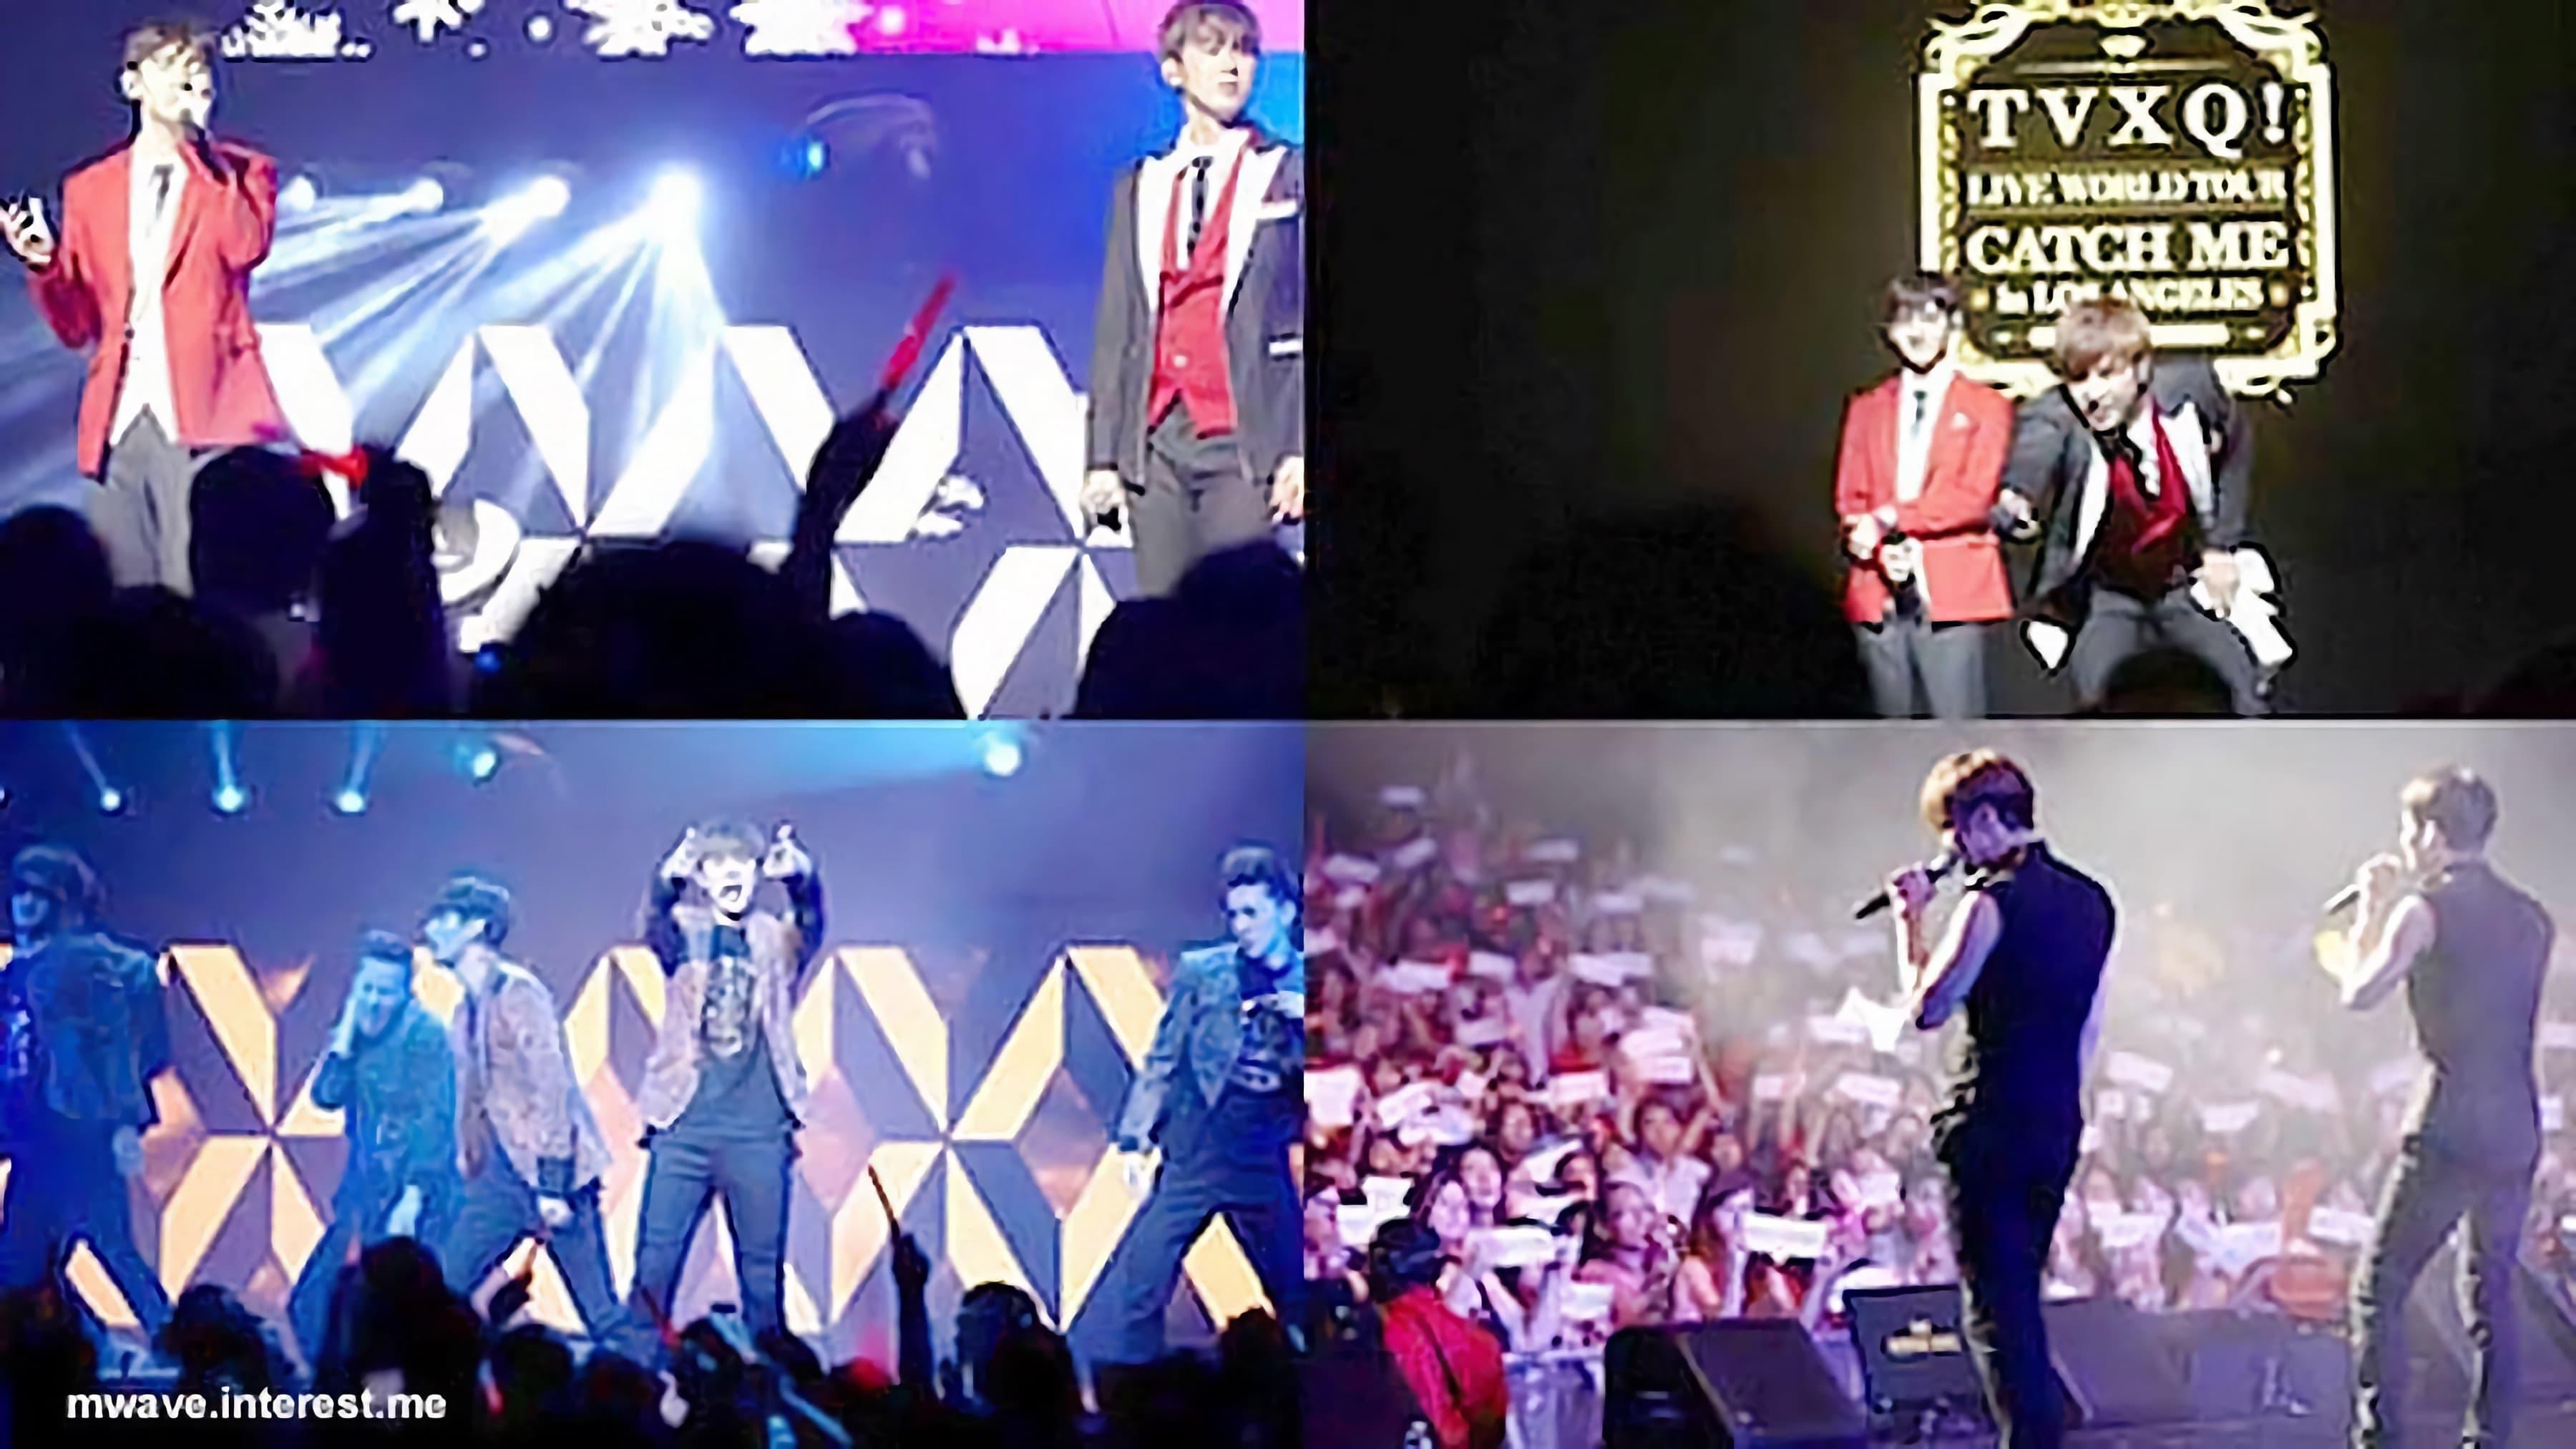 TVXQ! Live World Tour "Catch Me" backdrop